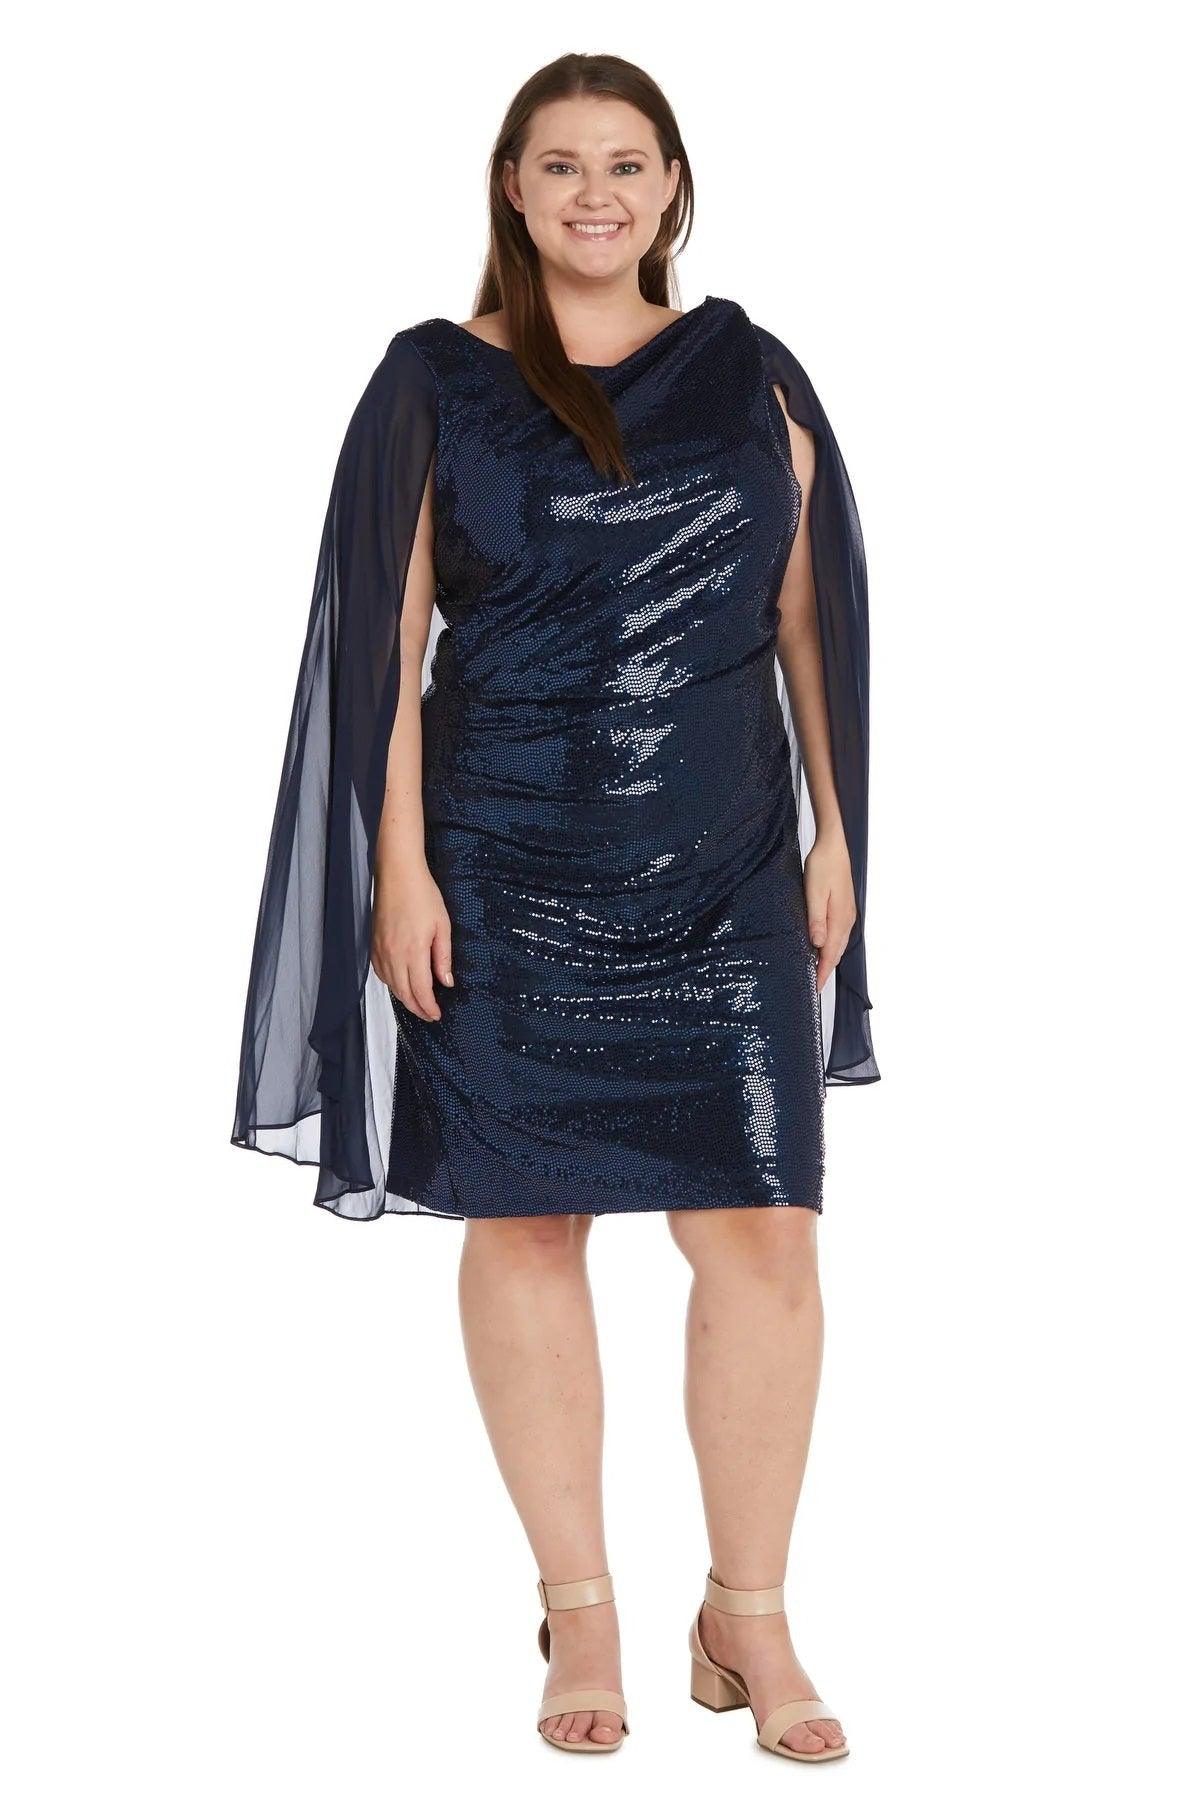 R&M Richards Short Plus Size Capelet Dress 7670W - The Dress Outlet